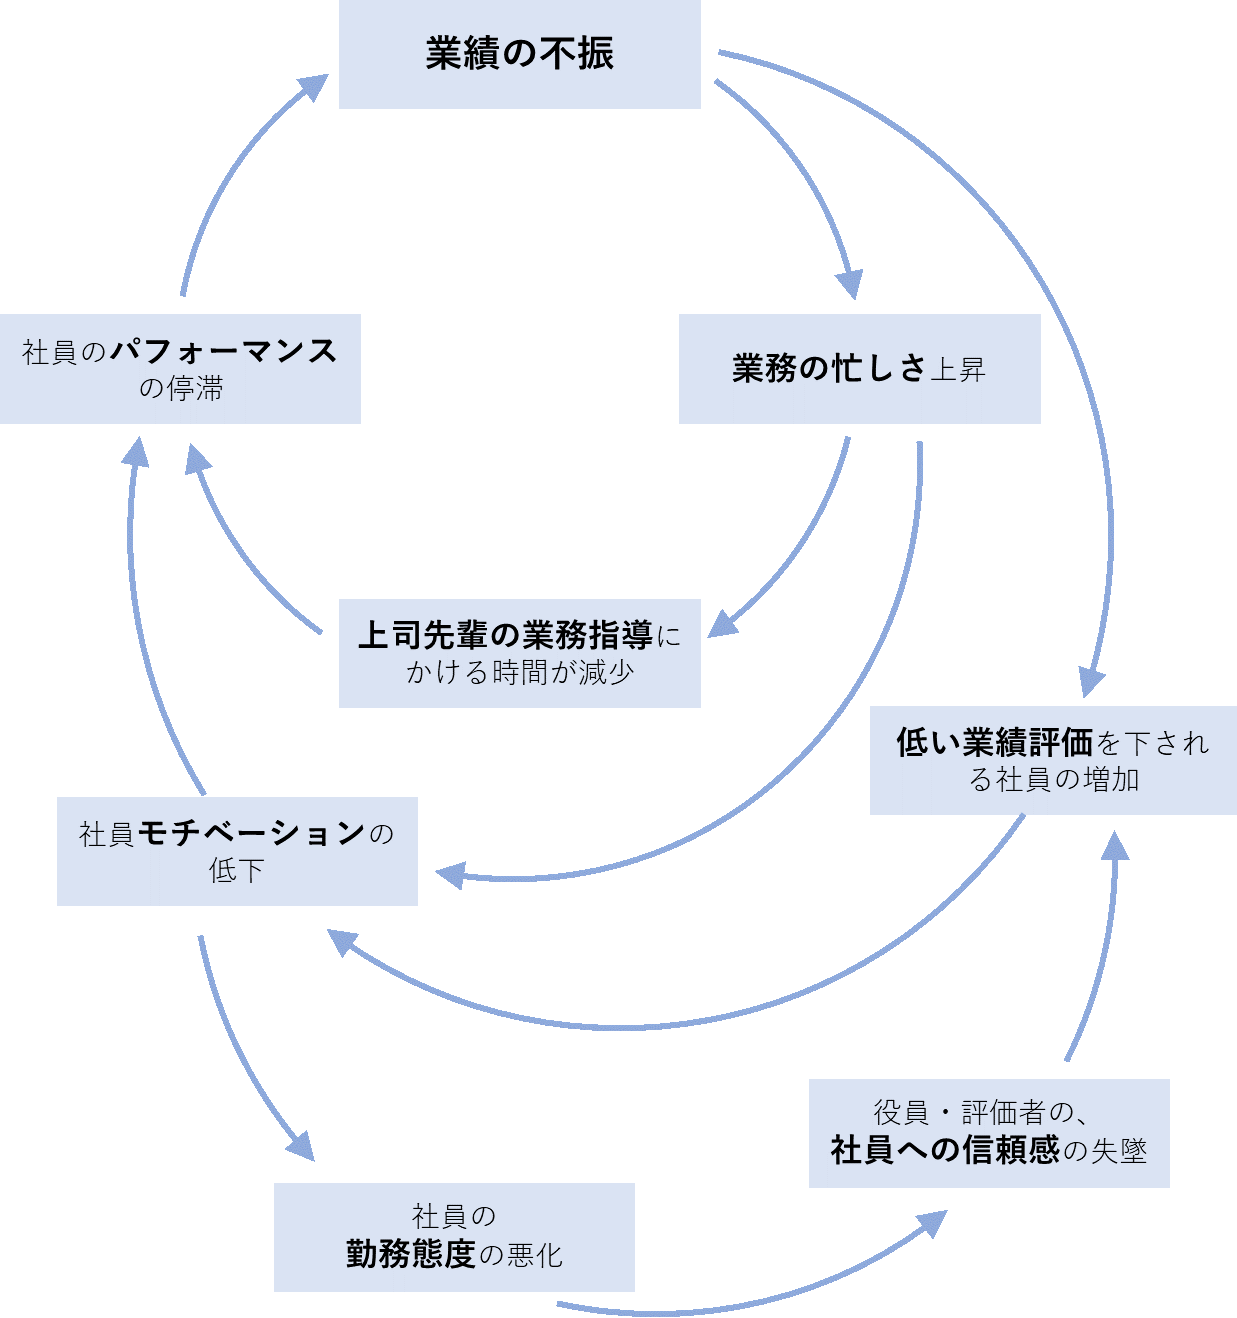  組織のシステム（構造）